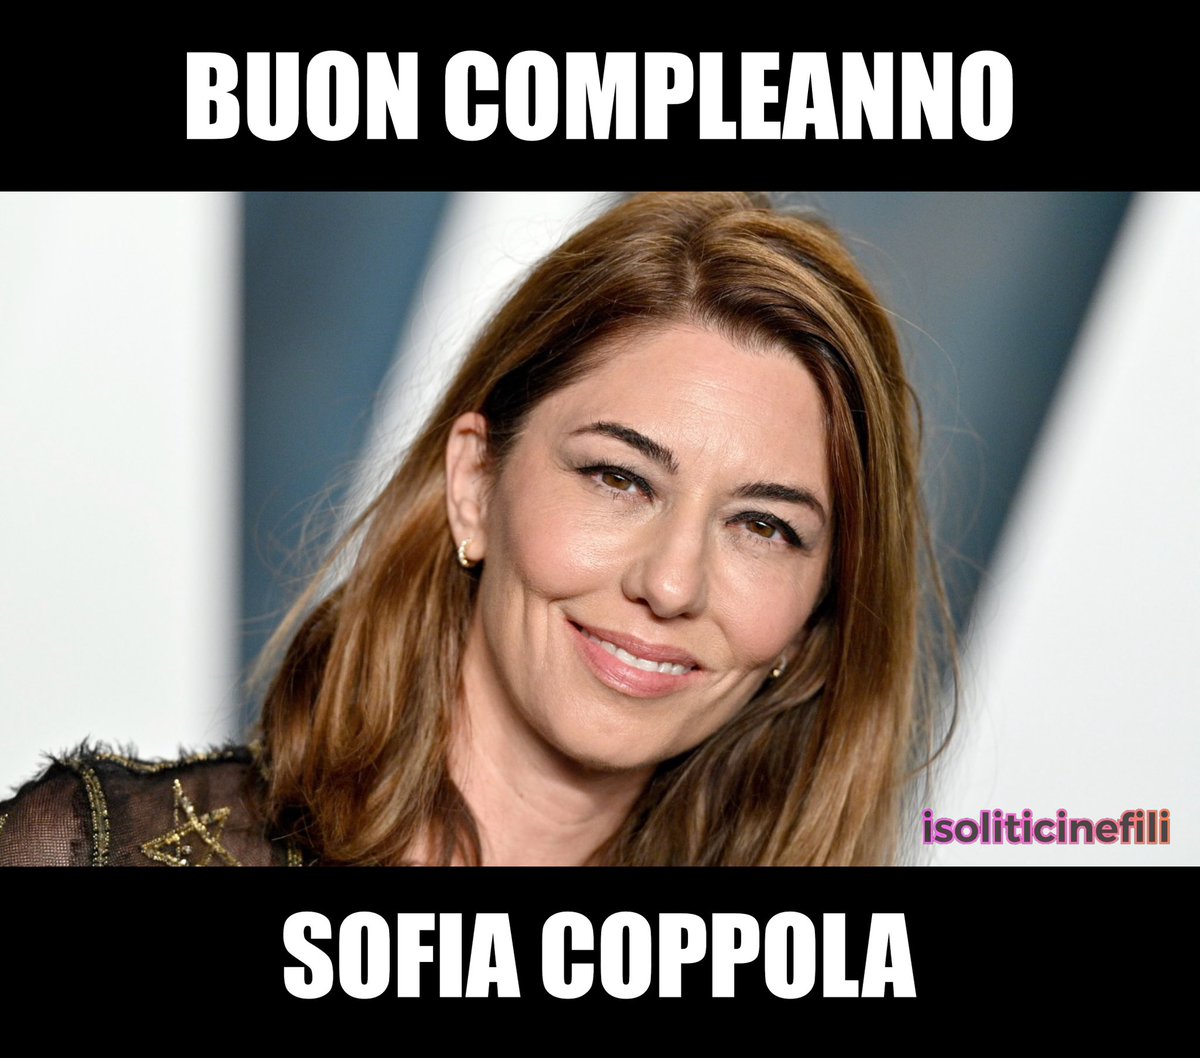 Buon compleanno Sofia Coppola!
Ieri, la regista e sceneggiatrice statunitense ha compiuto 53 anni.

#SofiaCoppola #cinema #film #news #notizie #1maggio #isoliticinefili